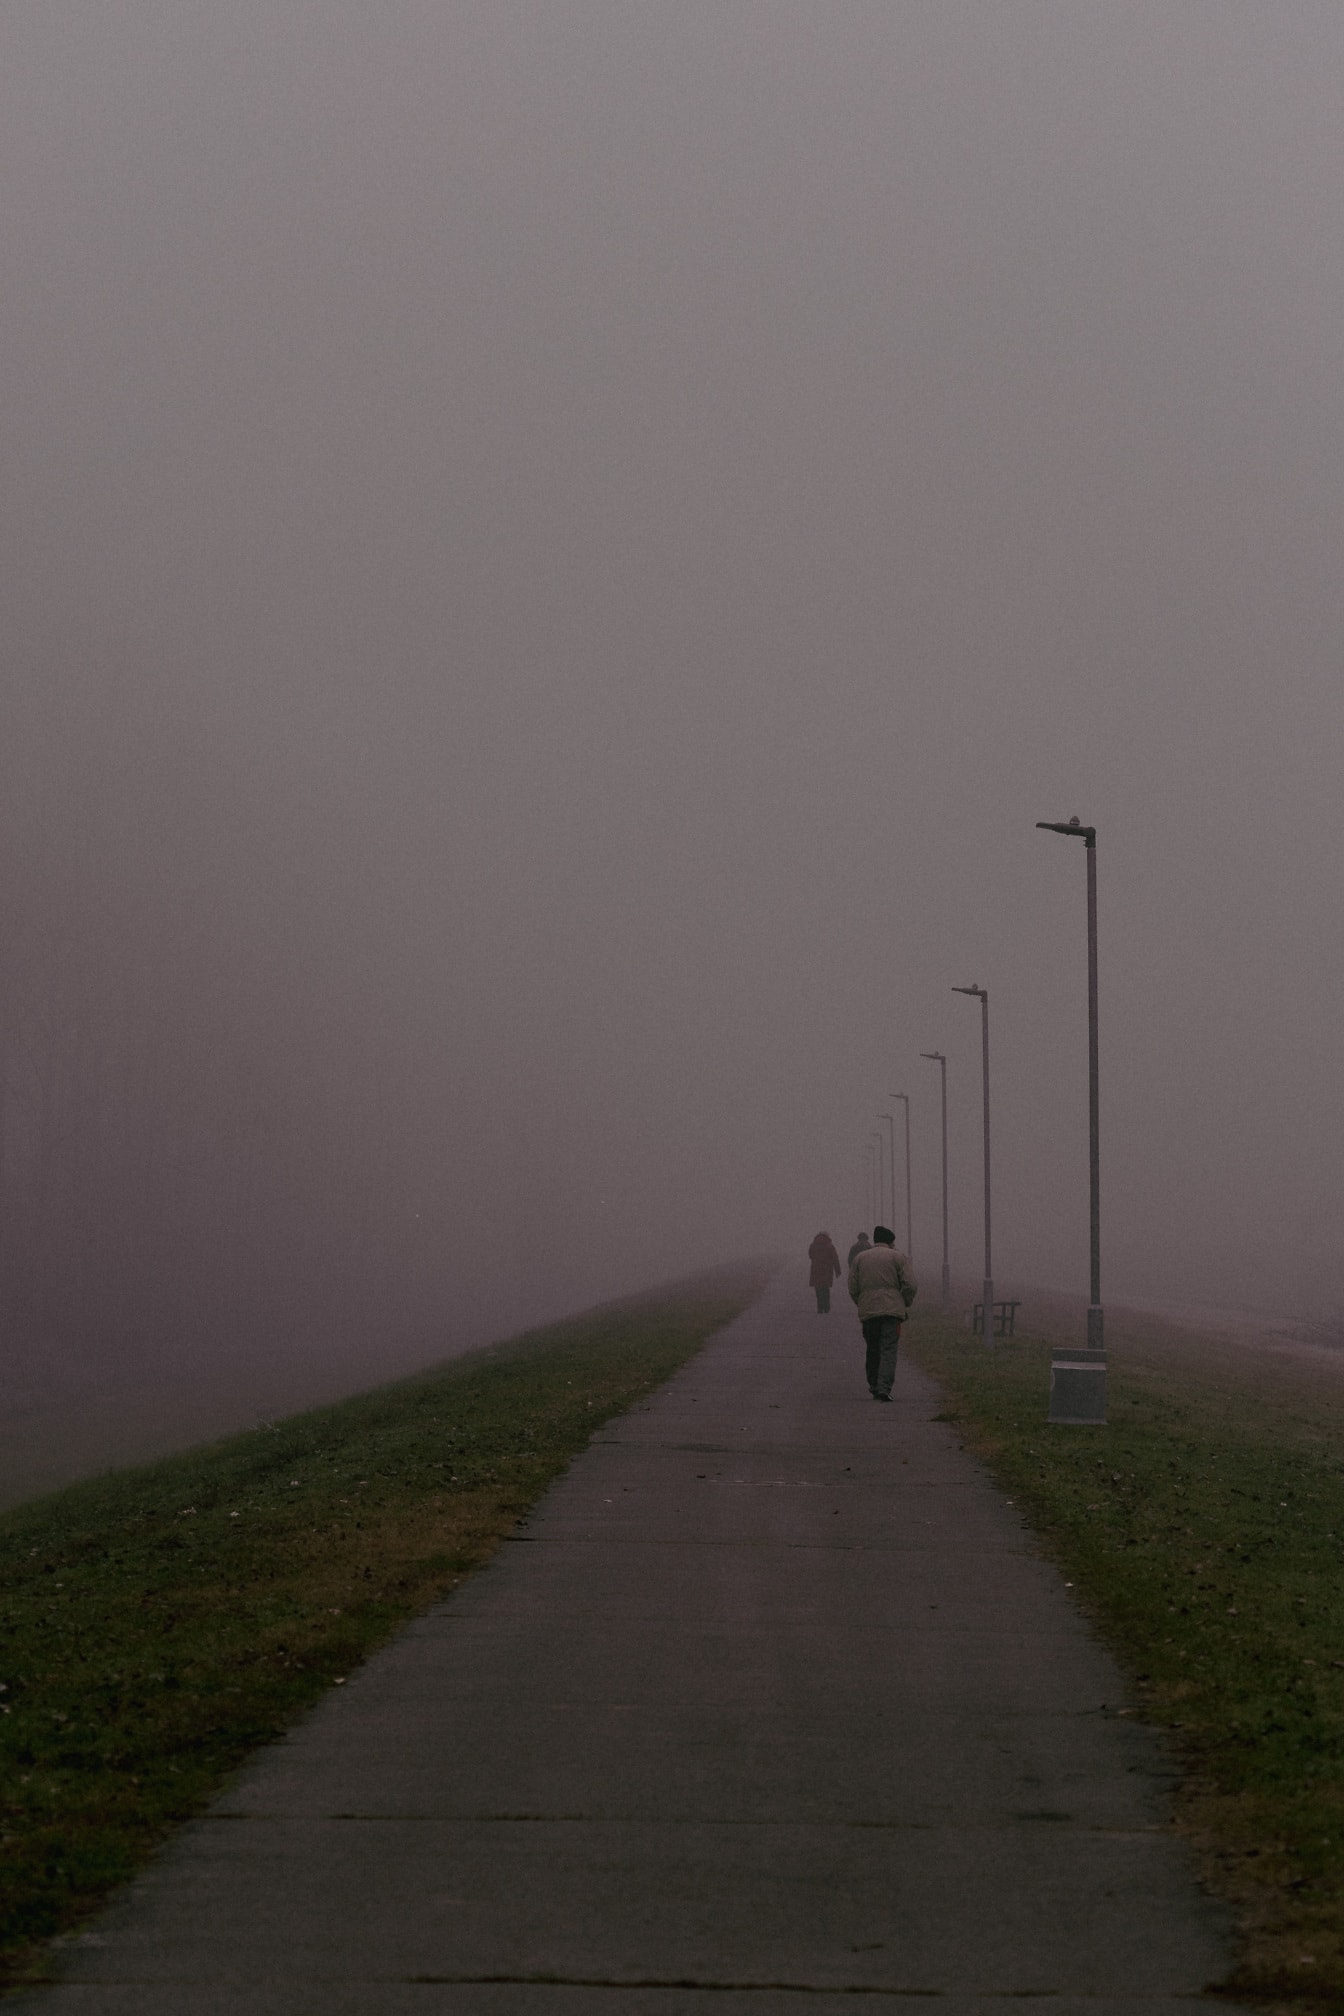 Pejalan kaki berjalan di jalan aspal berkabut di pagi hari